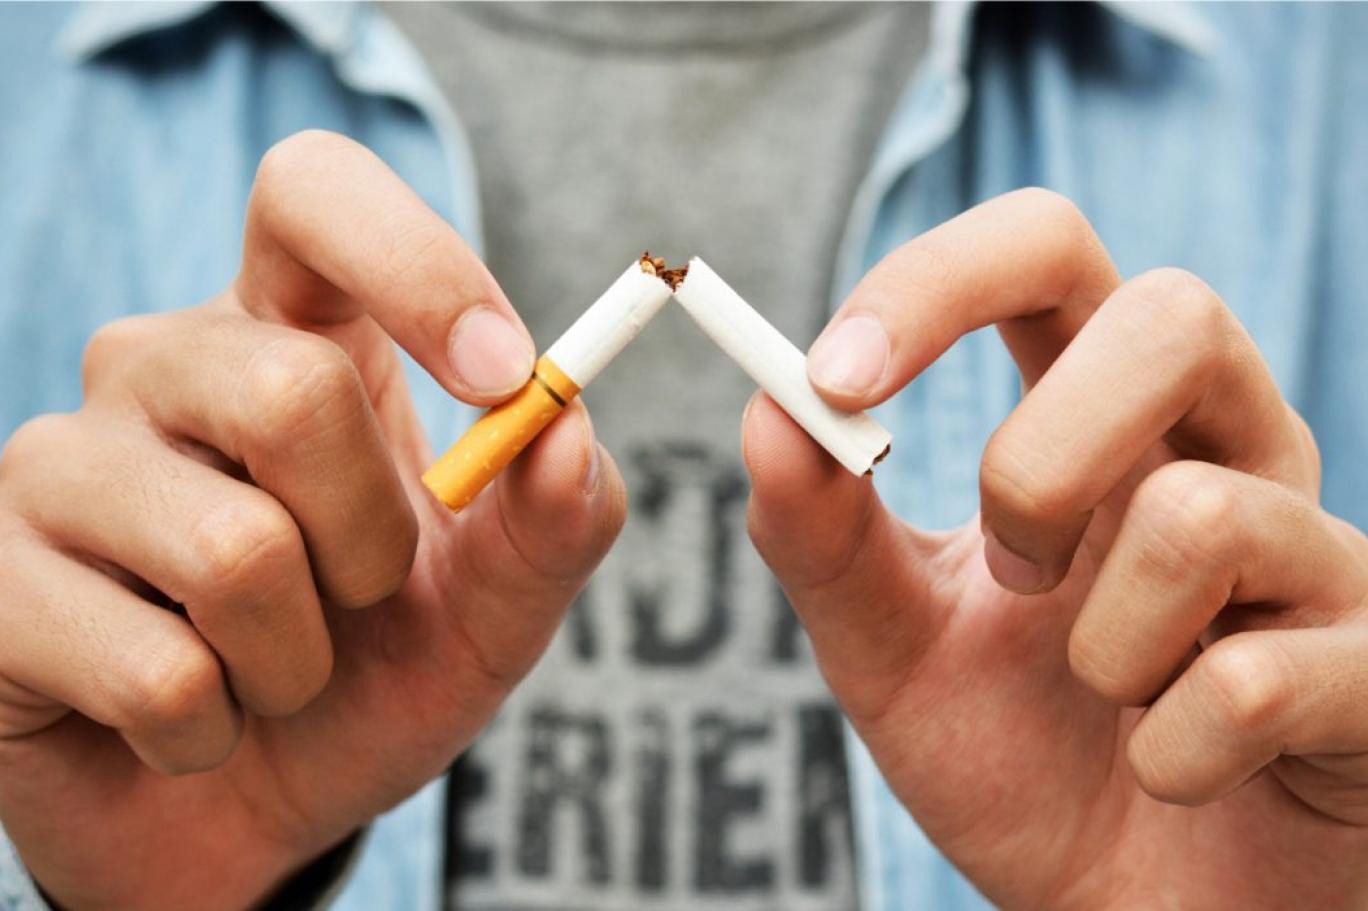 Người bệnh cần bỏ thuốc lá và hạn chế đến những nơi nhiều khói thuốc